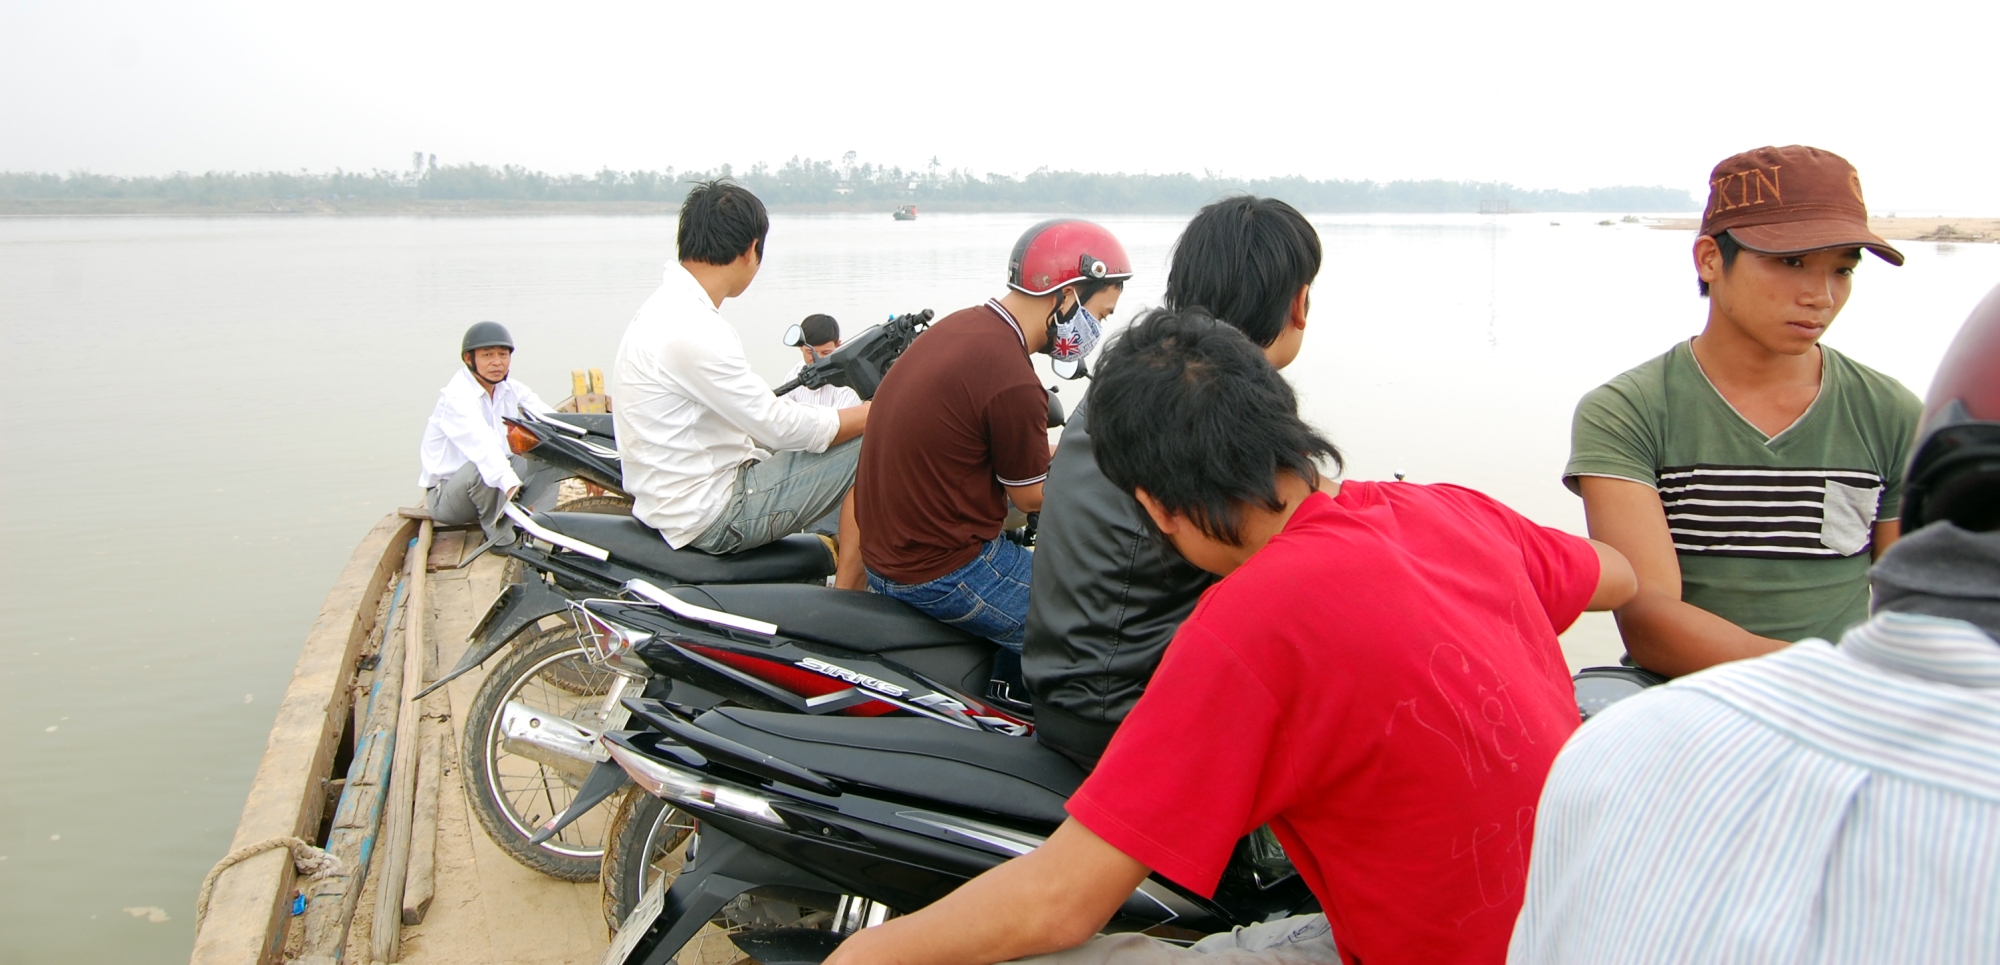 Ferrying motorbikes in rural east Vietnam.